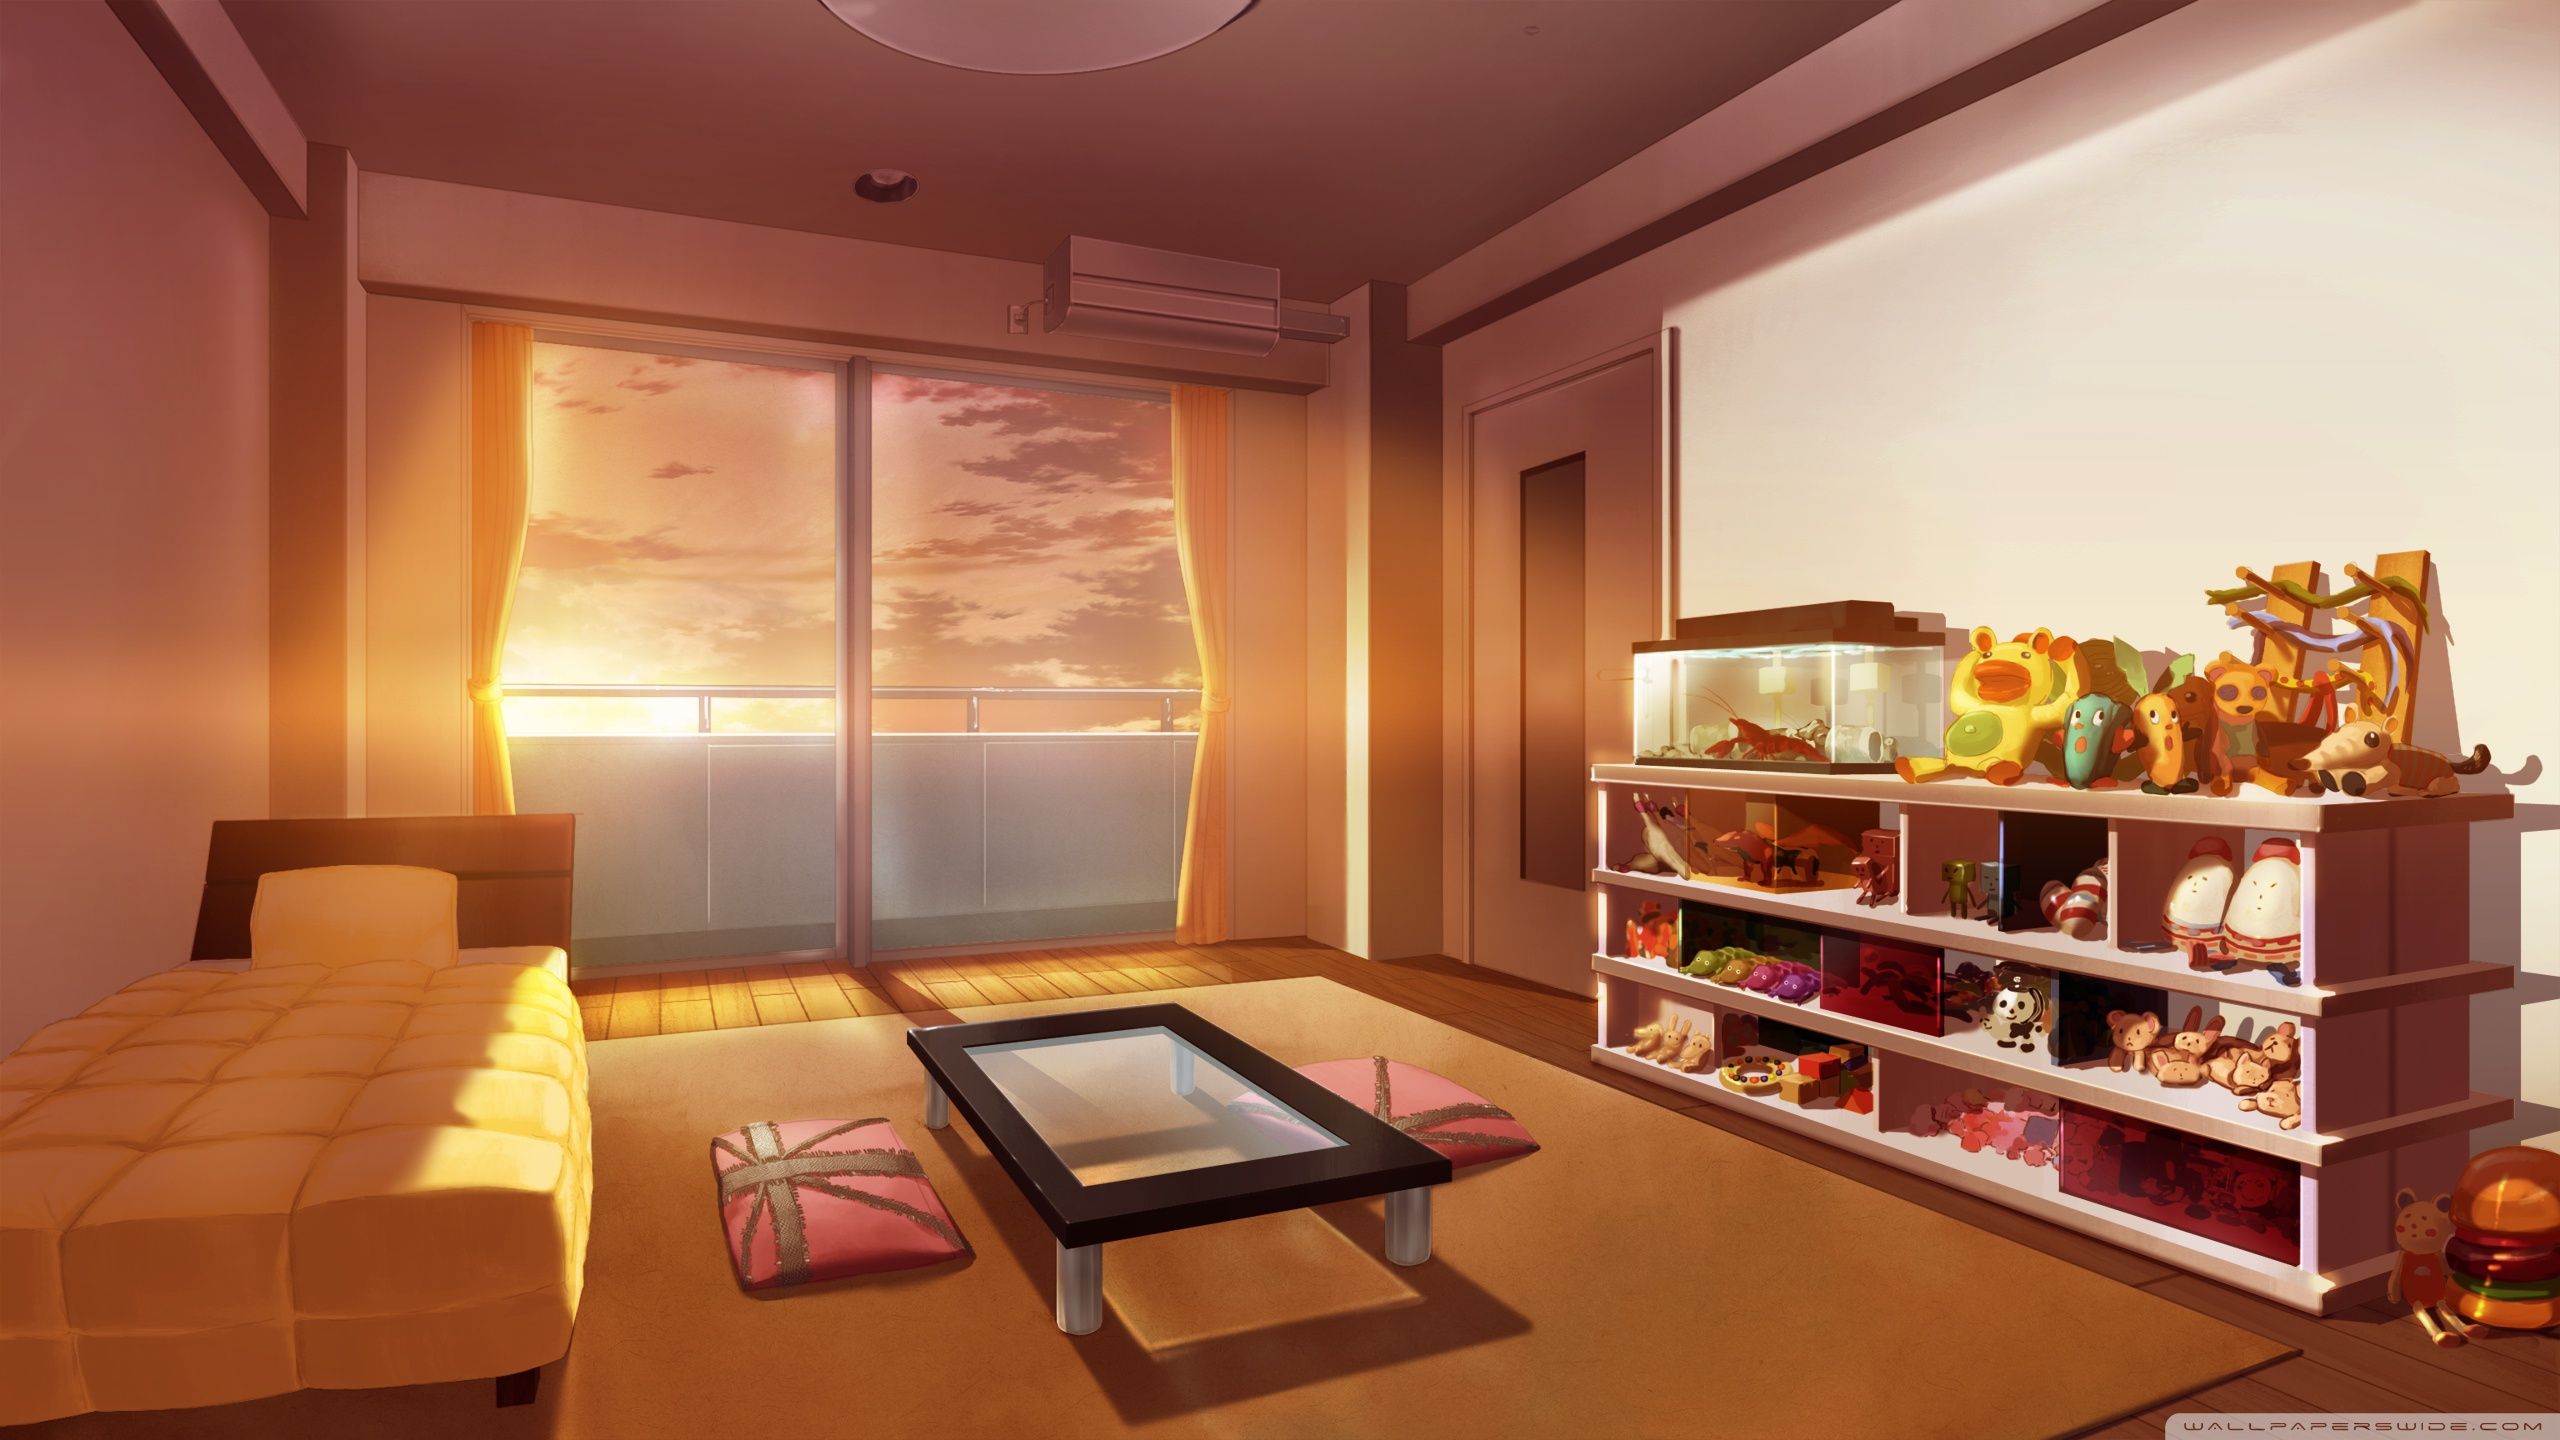 Phòng ngủ anime nghệ thuật – Nơi từng giấc mơ trở thành hiện thực. Được trang trí bằng những bức tranh anime đẹp và sáng tạo, căn phòng này chắc chắn sẽ đem lại cho bạn một giấc ngủ ngọt ngào và đầy cảm hứng.